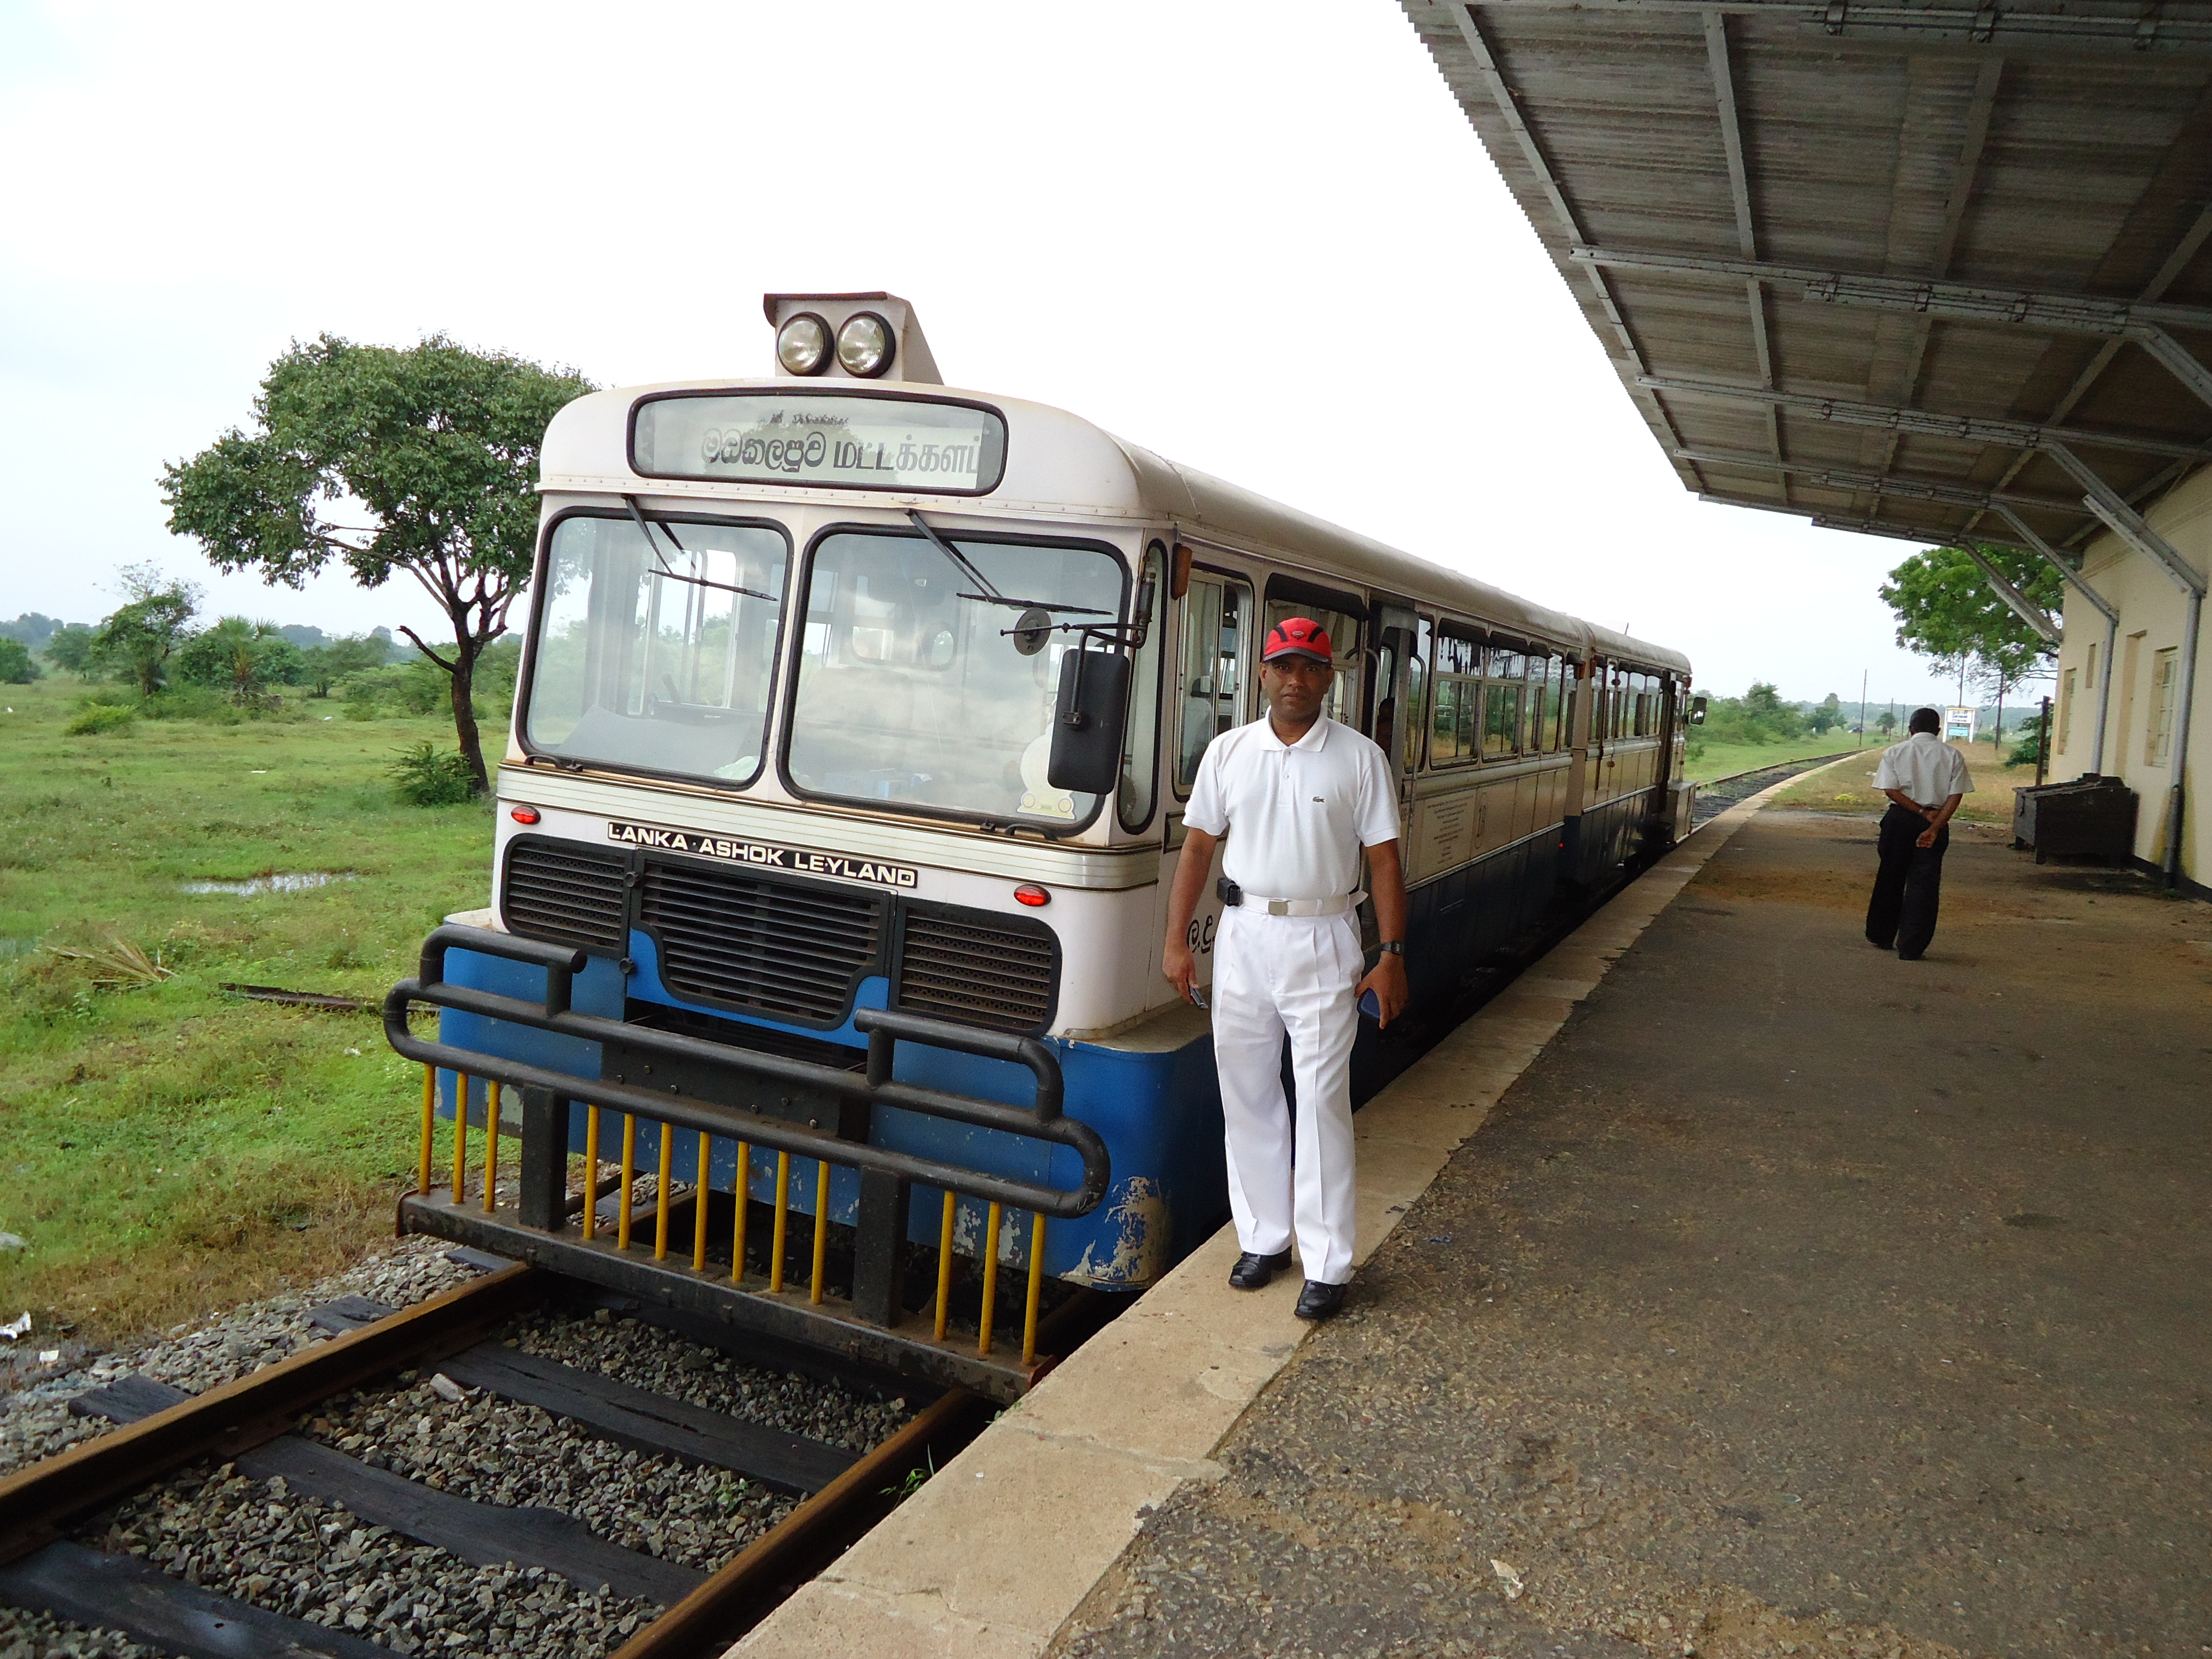 Rail_bus_manufacturd_by_sri_lankan_railway_engineers.jpg